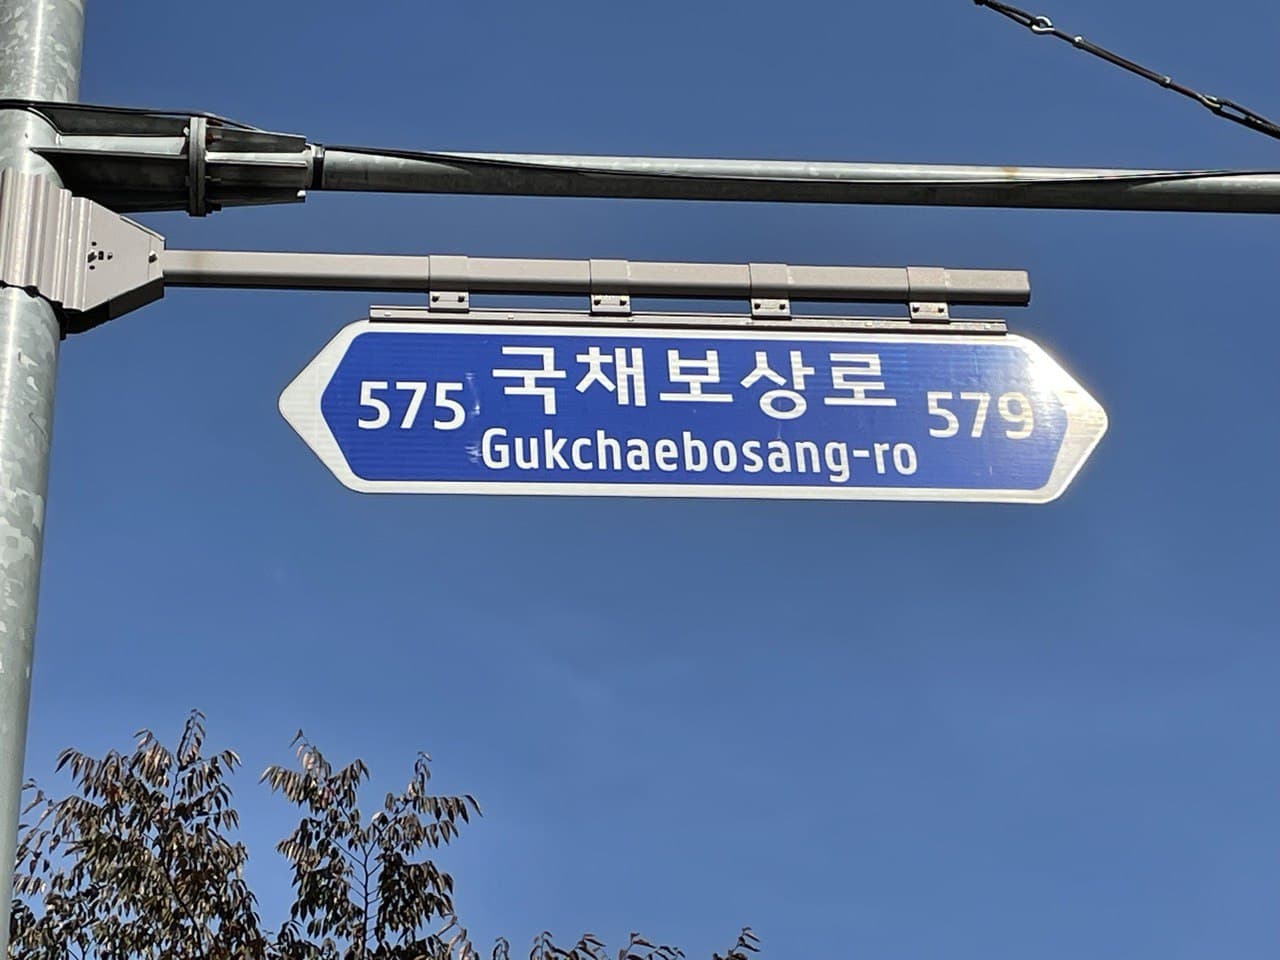 희움 인근 ‘국채보상로’ 거리 표지 ©김리라